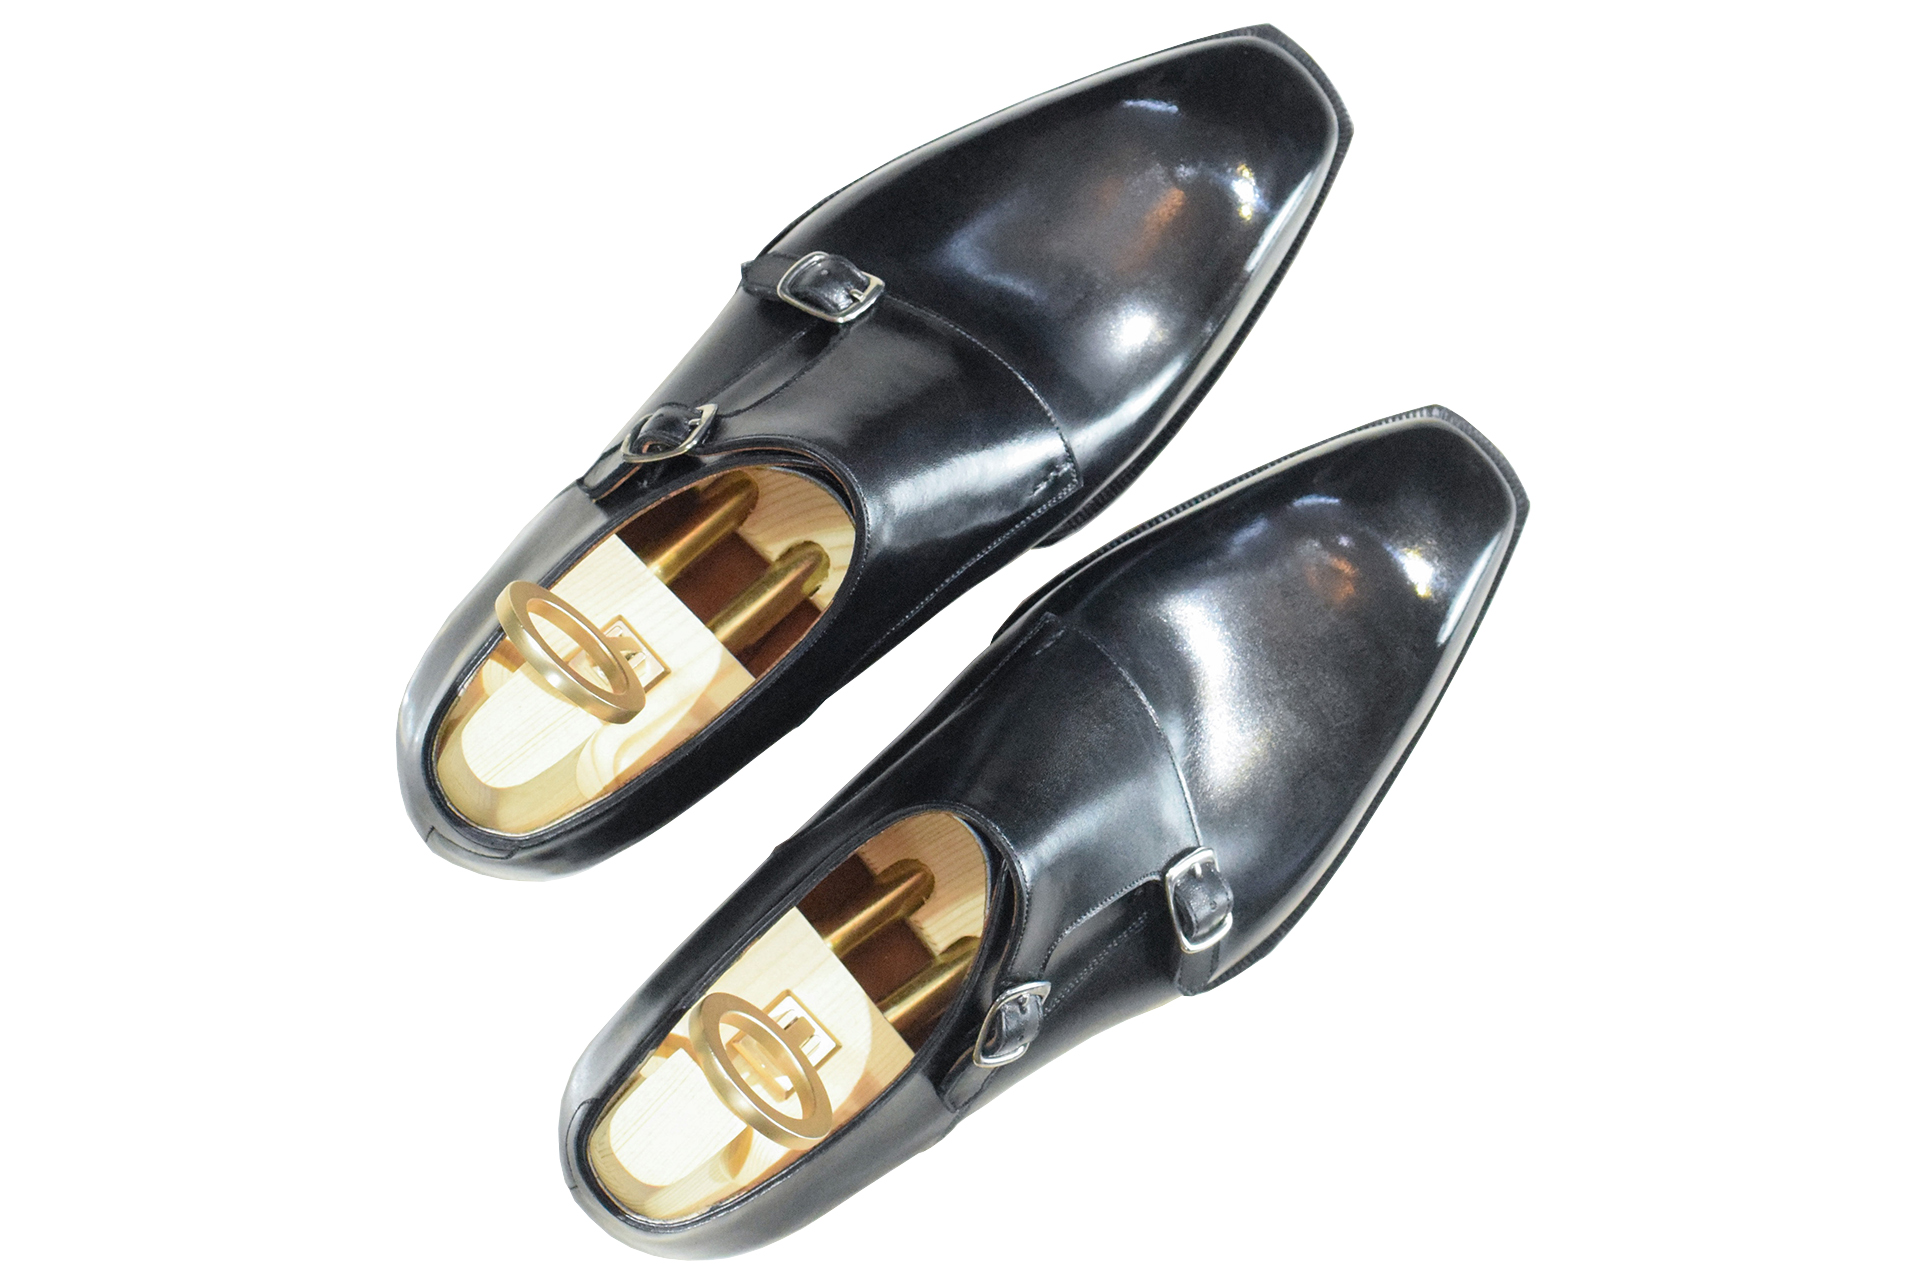 MTO double monkstrap plain toe shoes - basic line